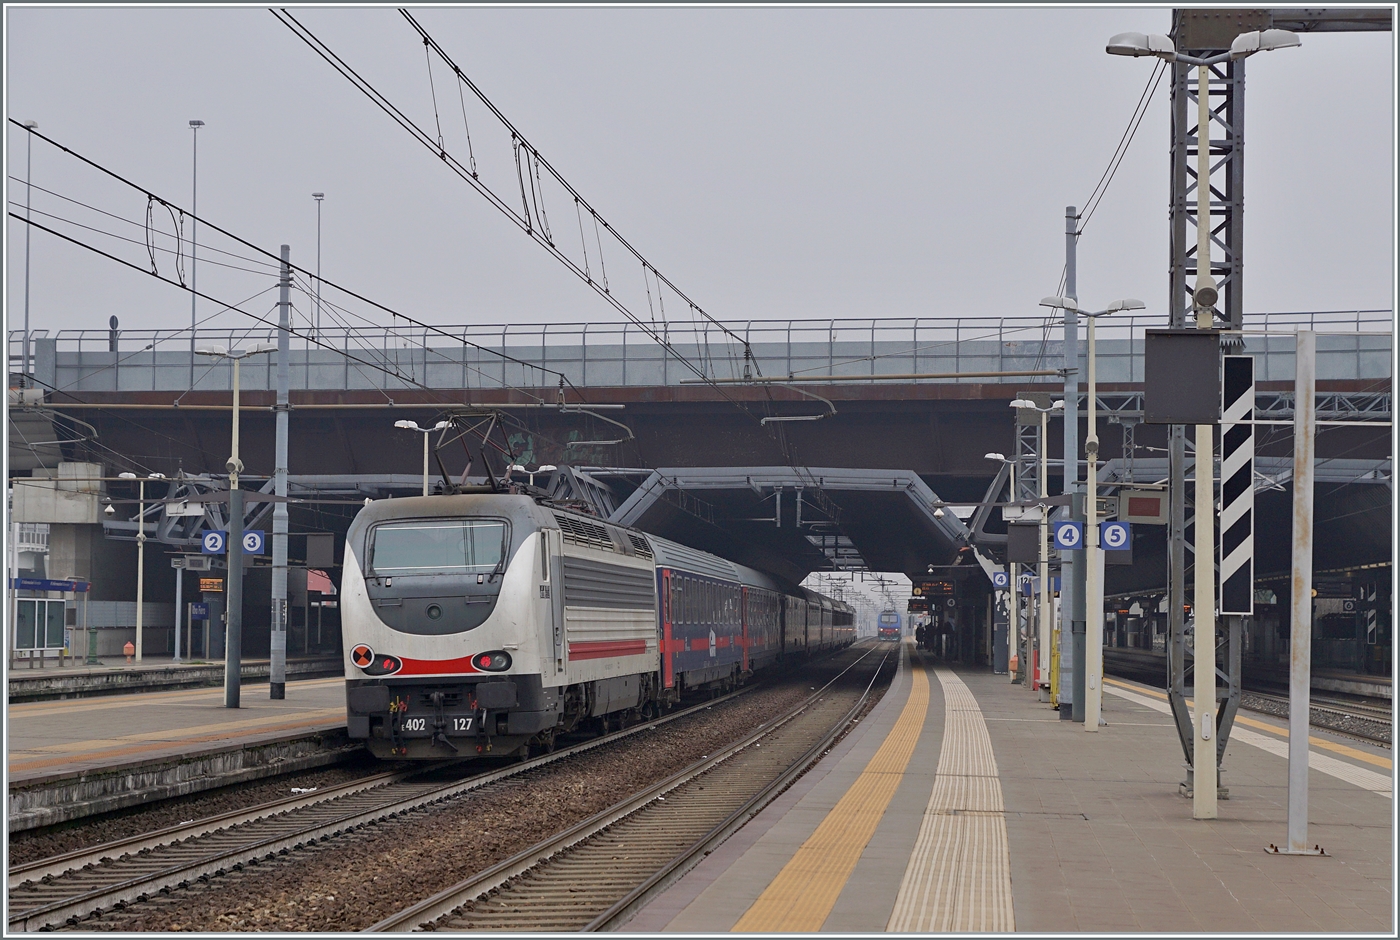 Die FS Trenitala E 402 120 und am Schluss des Zuges die 402 127 sind mit dem Treno di notte ICN 798 von Salerno nach Torino unterwegs. Der Zug erreicht den Bahnhof Rho Fiera Milano wo der ohne Halt durch fährt.

24. Februar 2023